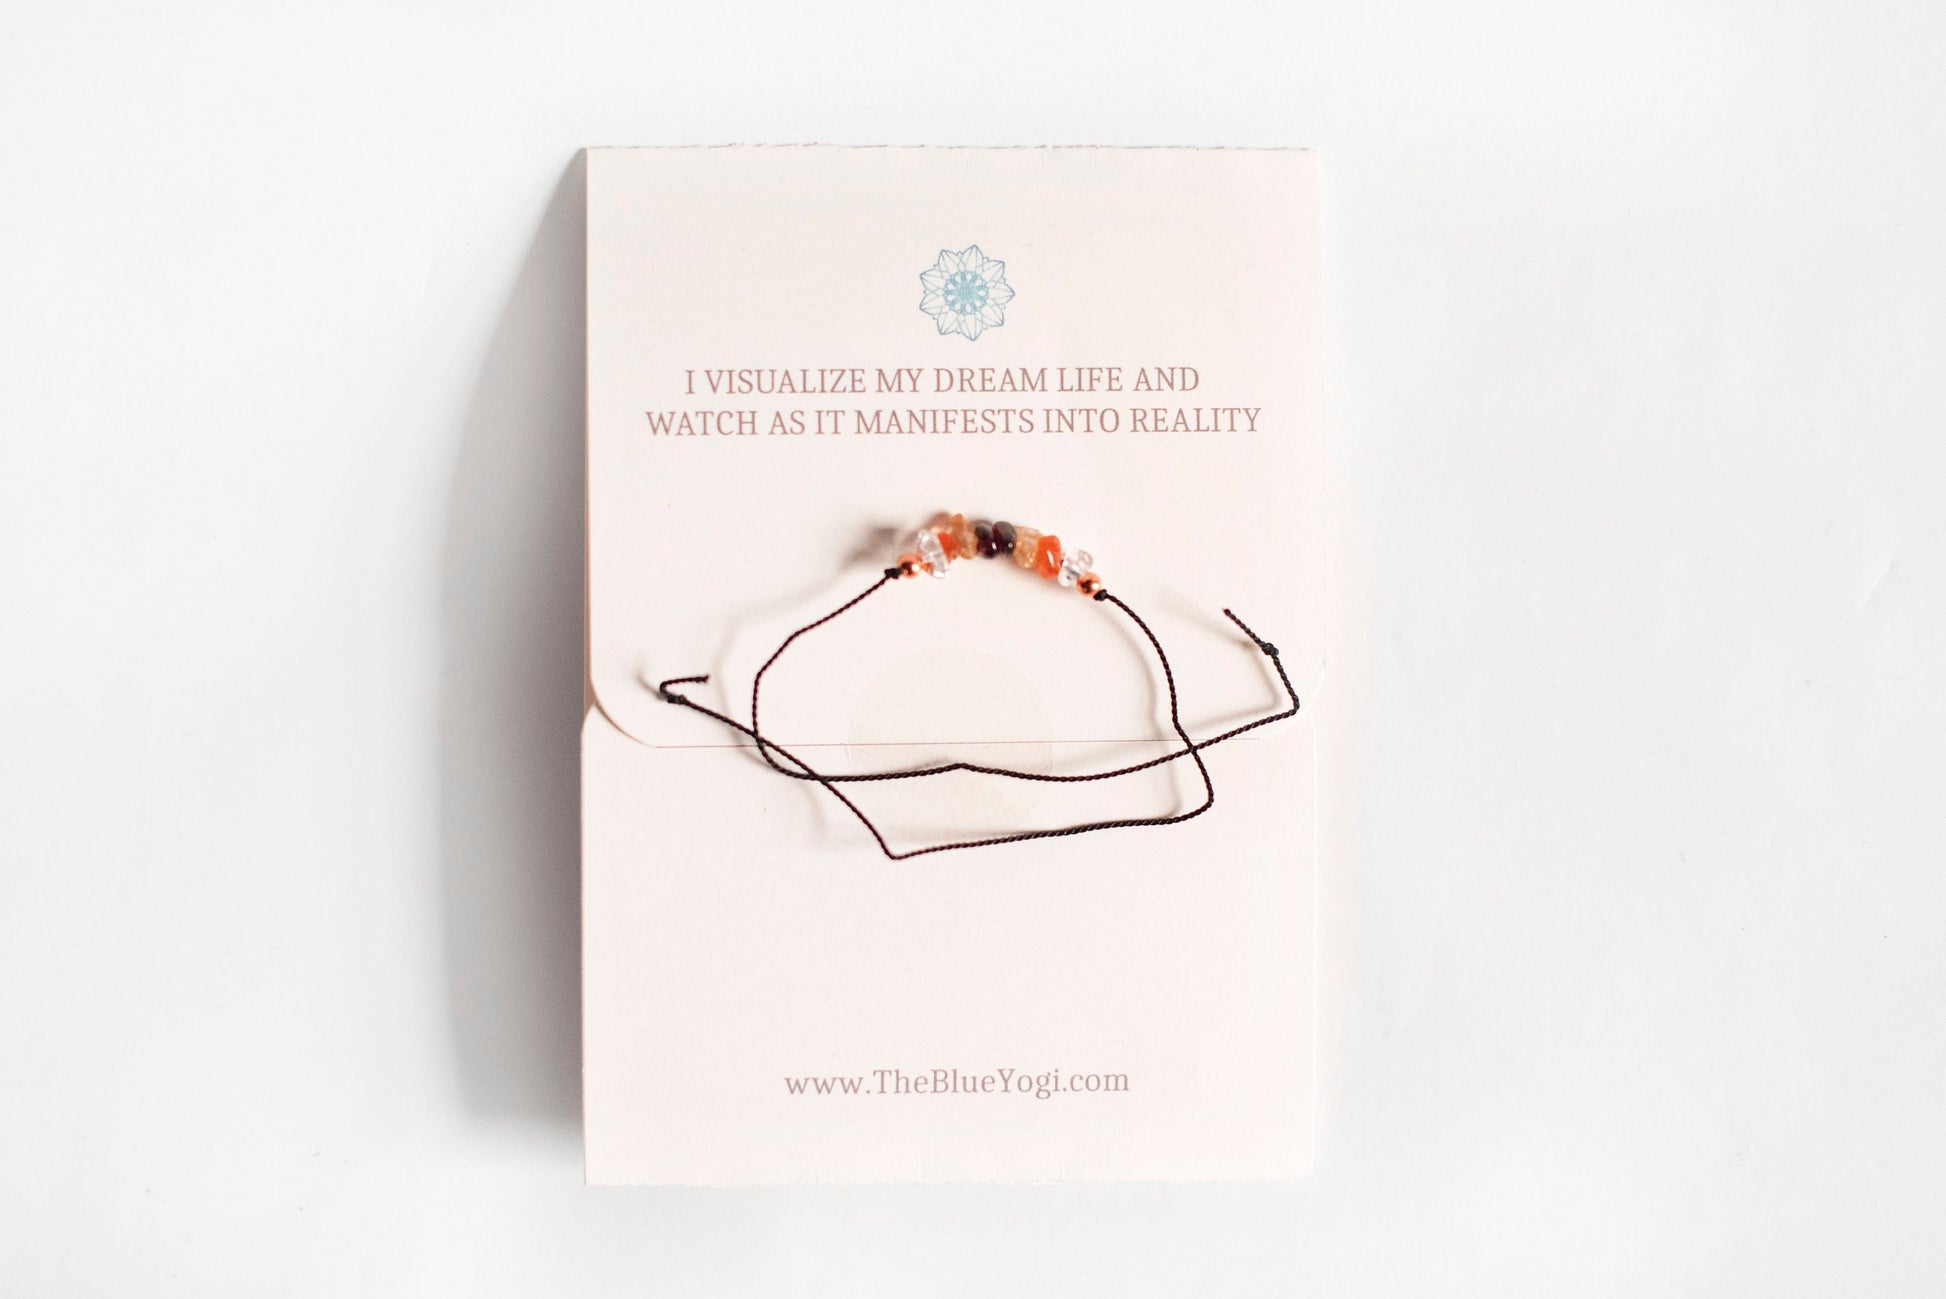 Manifestation crystal bracelet/anklet - boho, casual & minimal - Tie closure - Theblueyogi